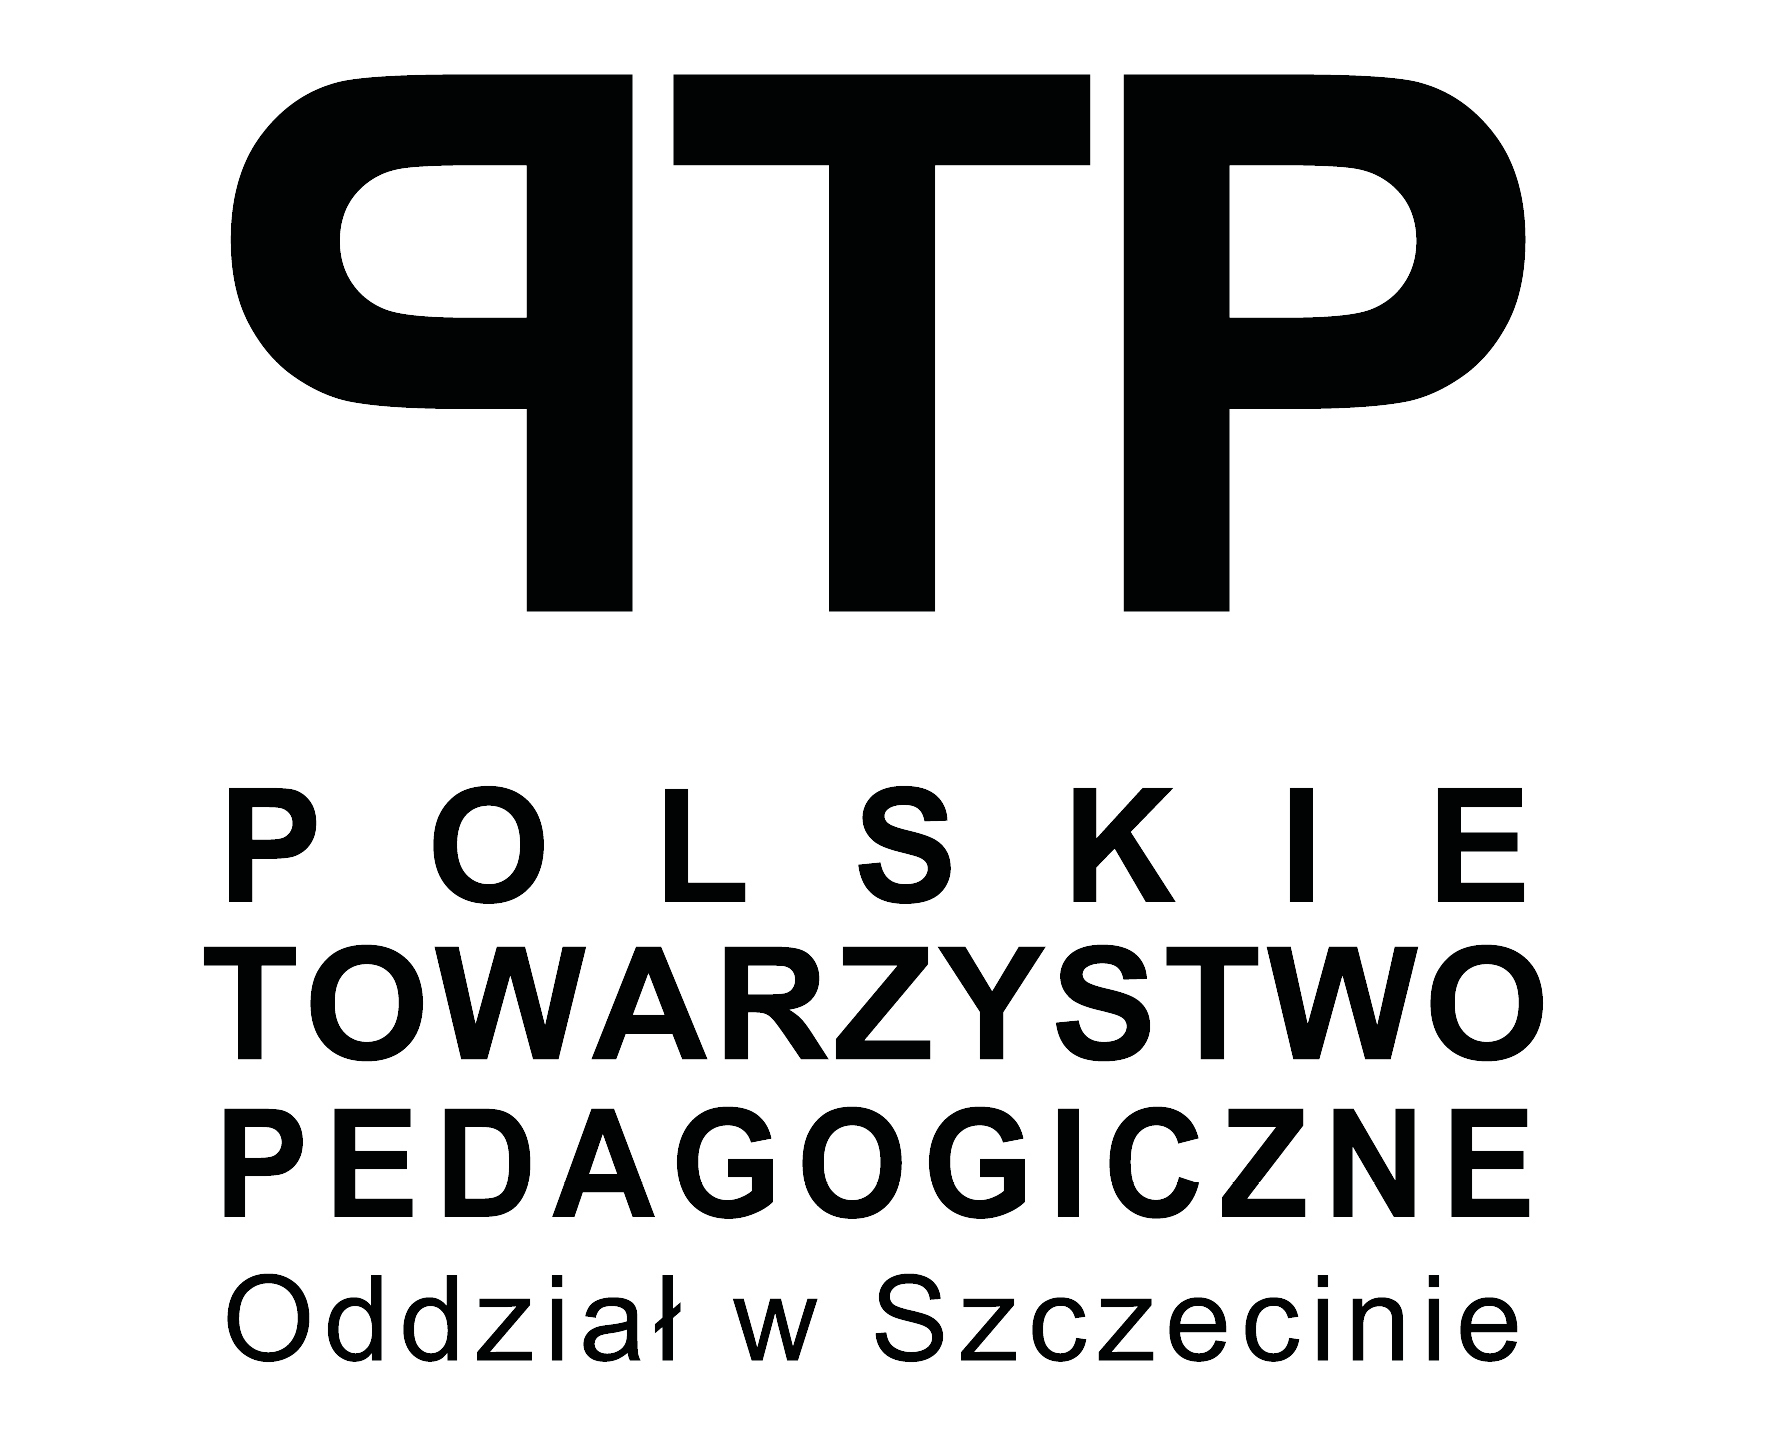 Zjazd Delegatów Polskiego Towarzystwa Pedagogicznego